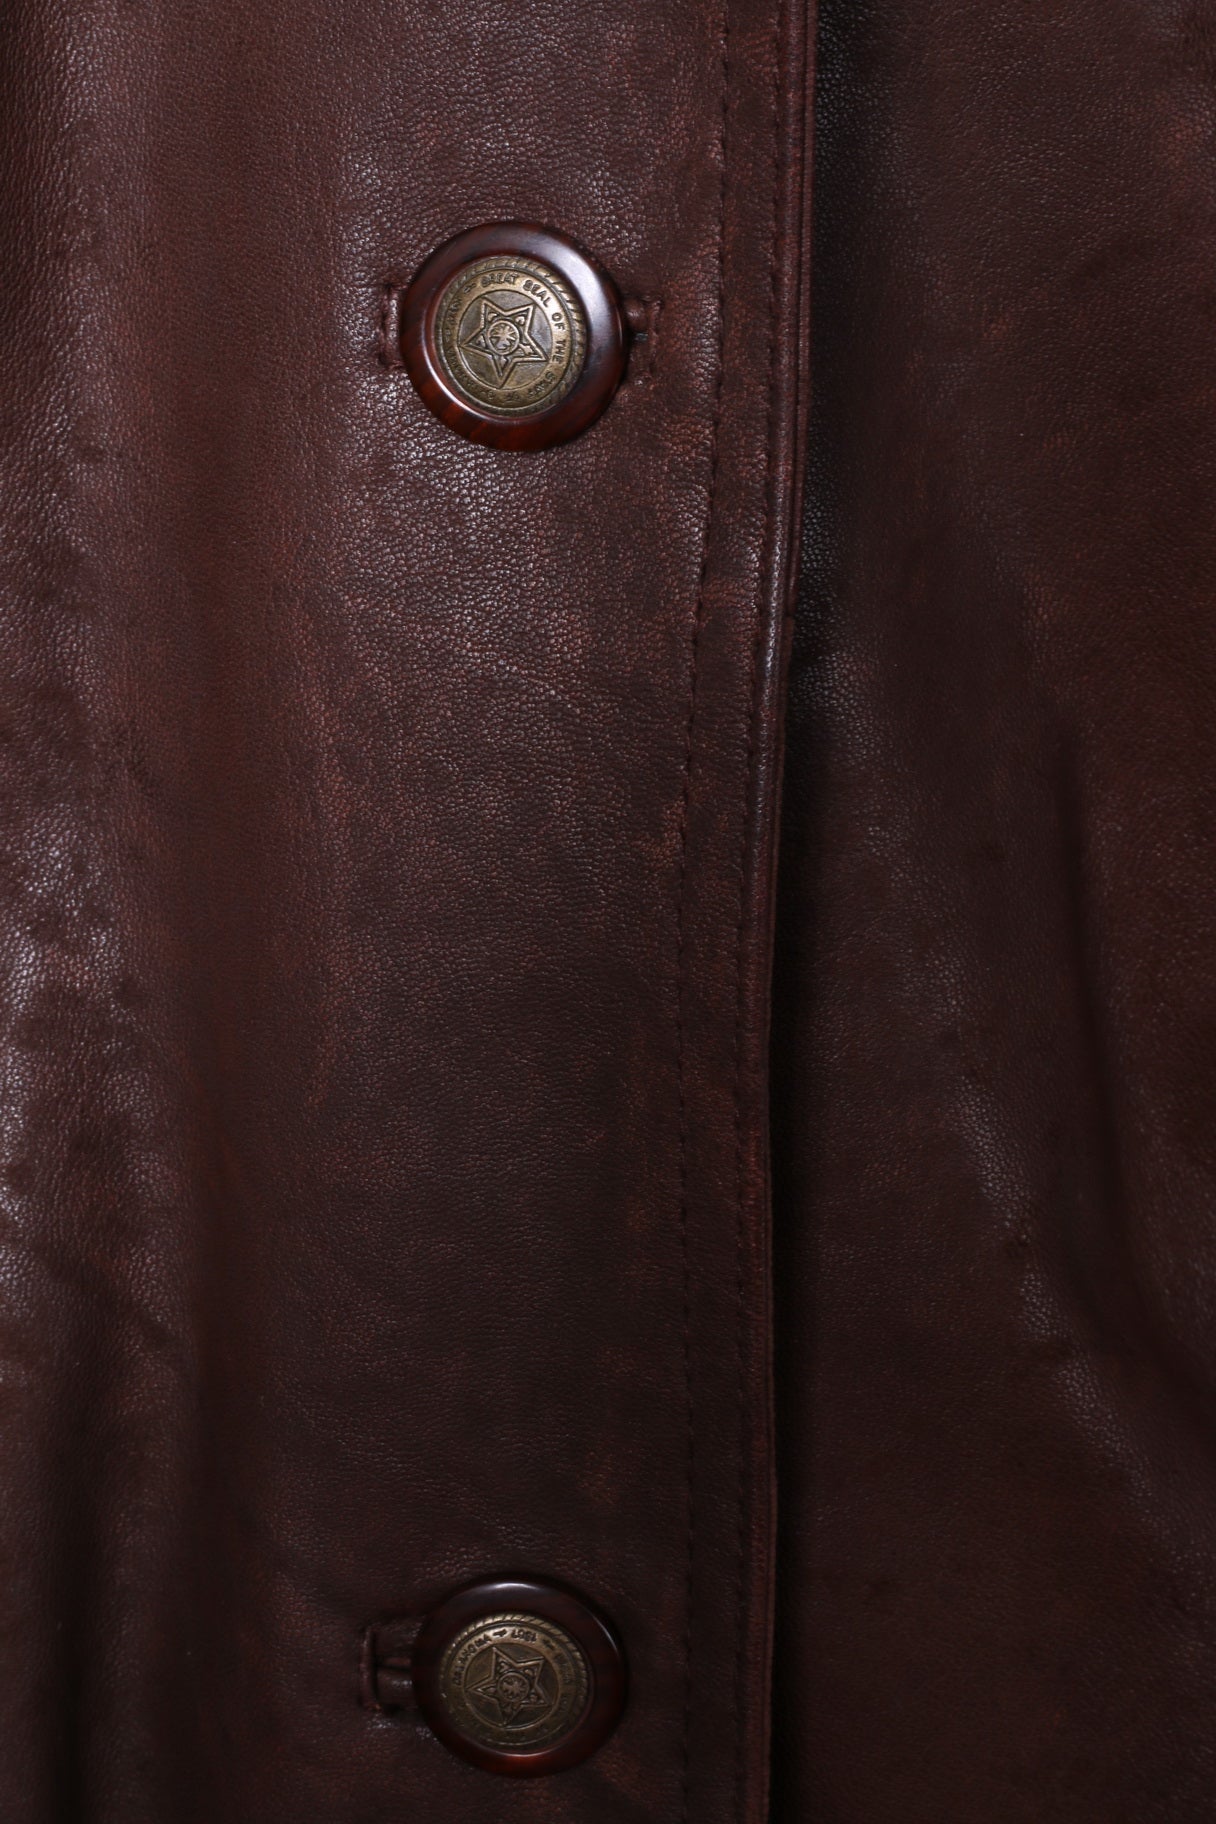 Maxin norvège femmes 34 M veste marron cuir surdimensionné Polarpels simple boutonnage Blazer